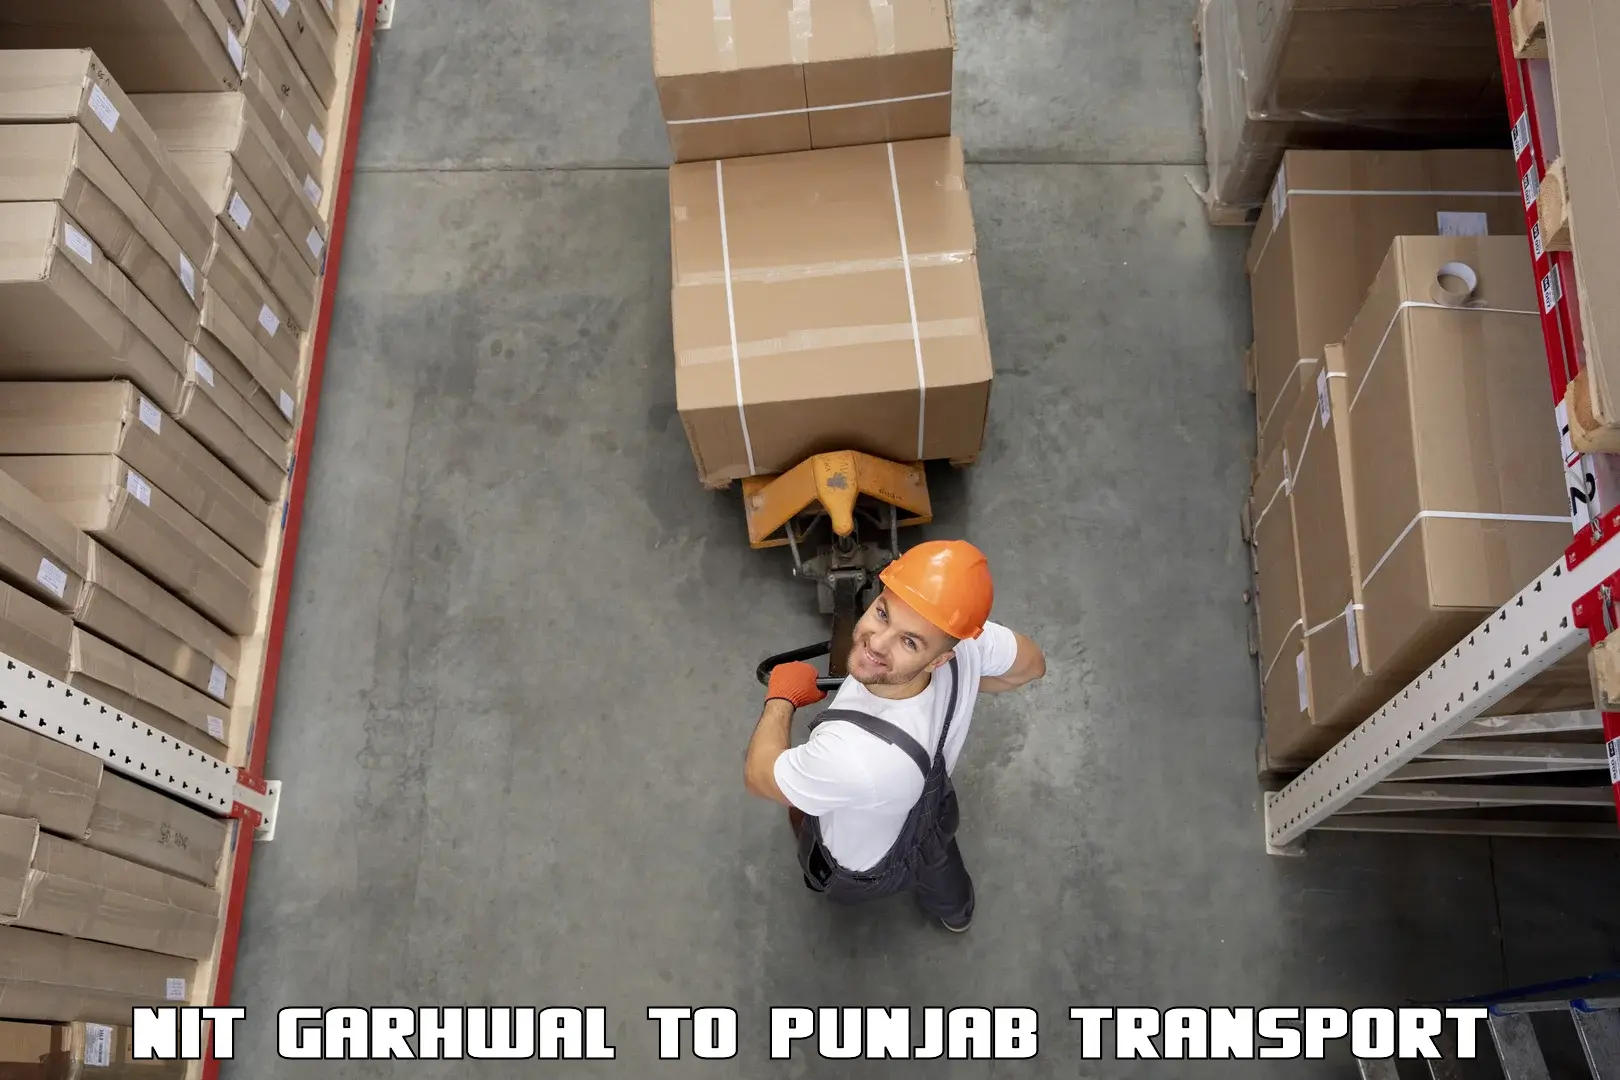 Furniture transport service NIT Garhwal to Dasuya